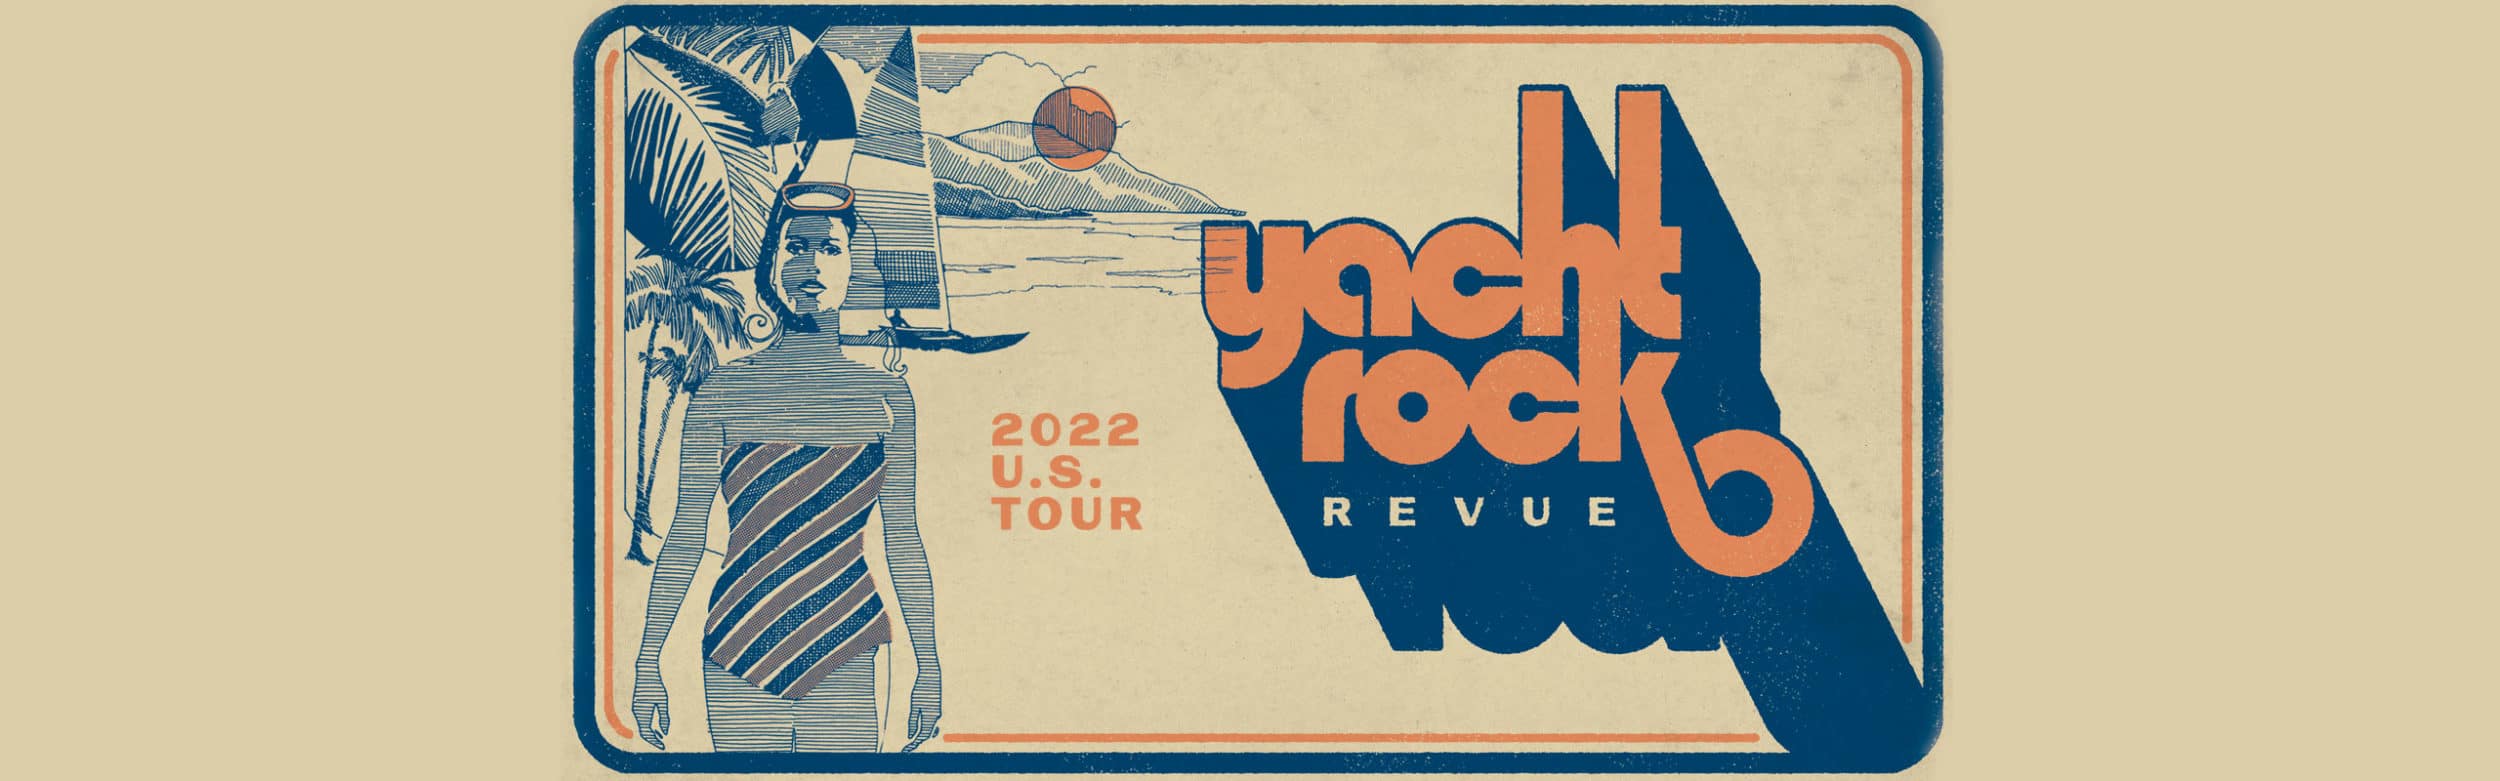 Yacht Rock Revue